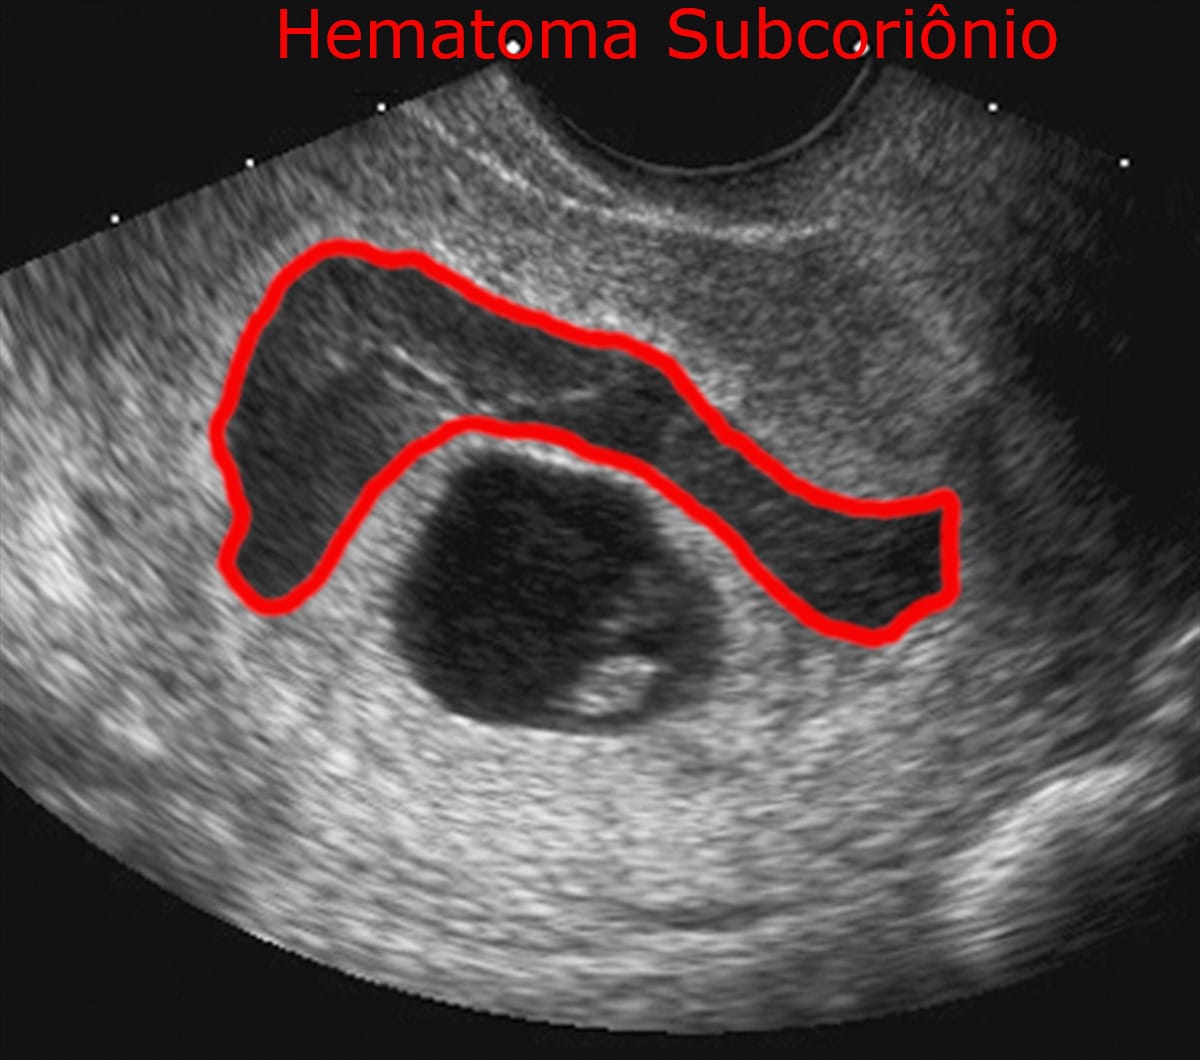 Ultrassom Hematoma Subcoriônico - Descolamento do Saco Gestacional